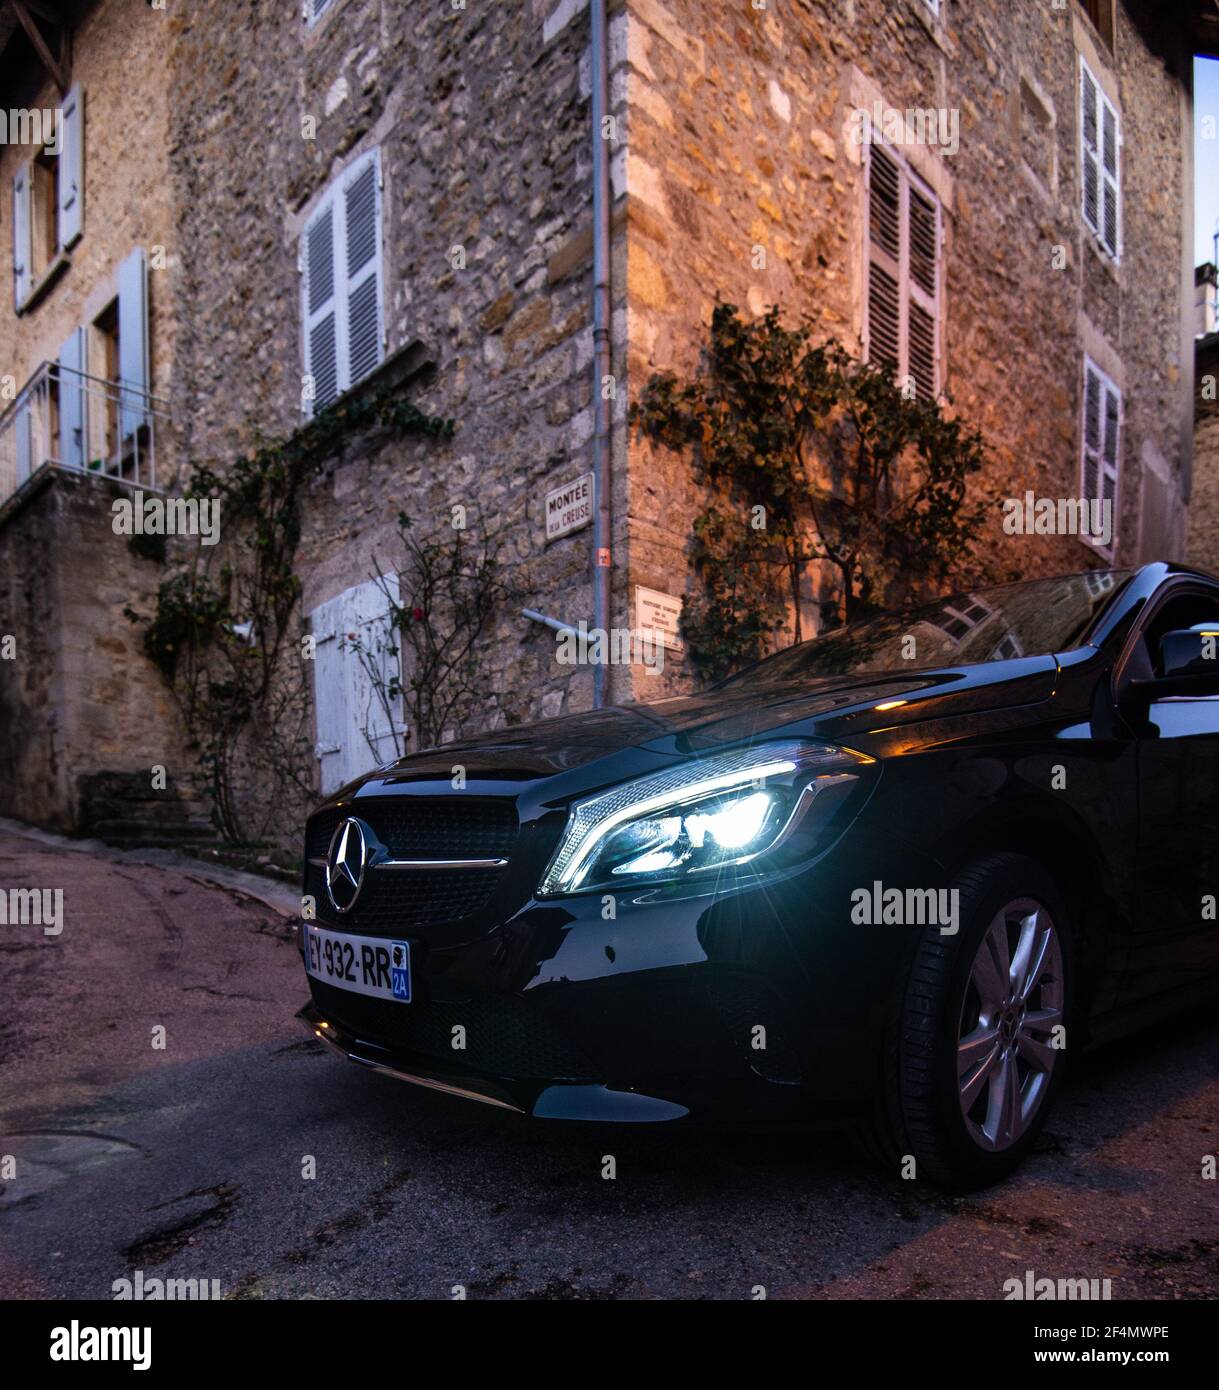 Mercedes Benz voiture de luxe dans les rues étroites de la ville de Lyon. Vue rapprochée d'une voiture noire haut de gamme dans les rues urbaines Banque D'Images